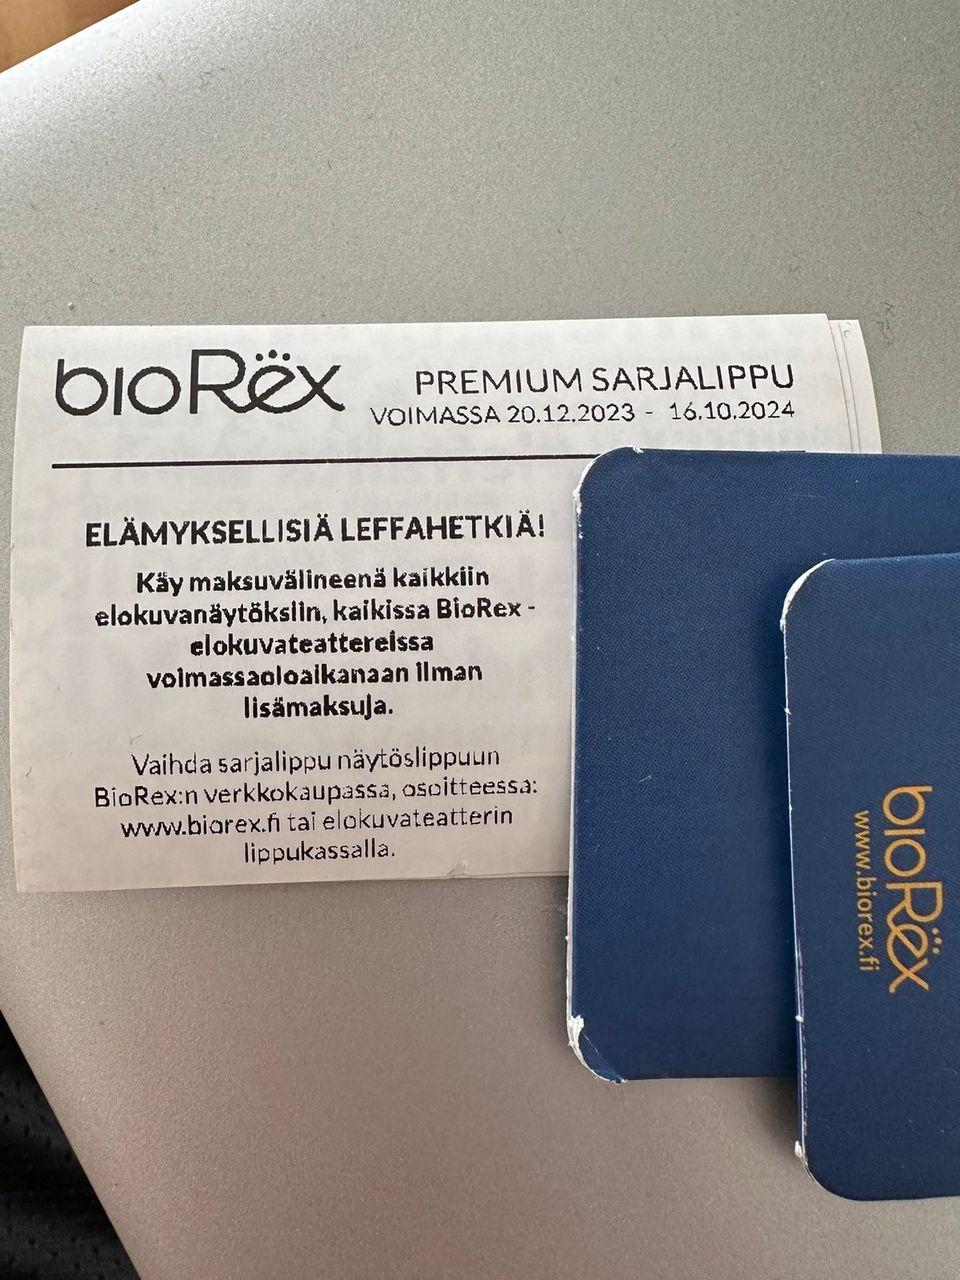 Biorex Premium sarjalippuja 16.10.2024 voimassa